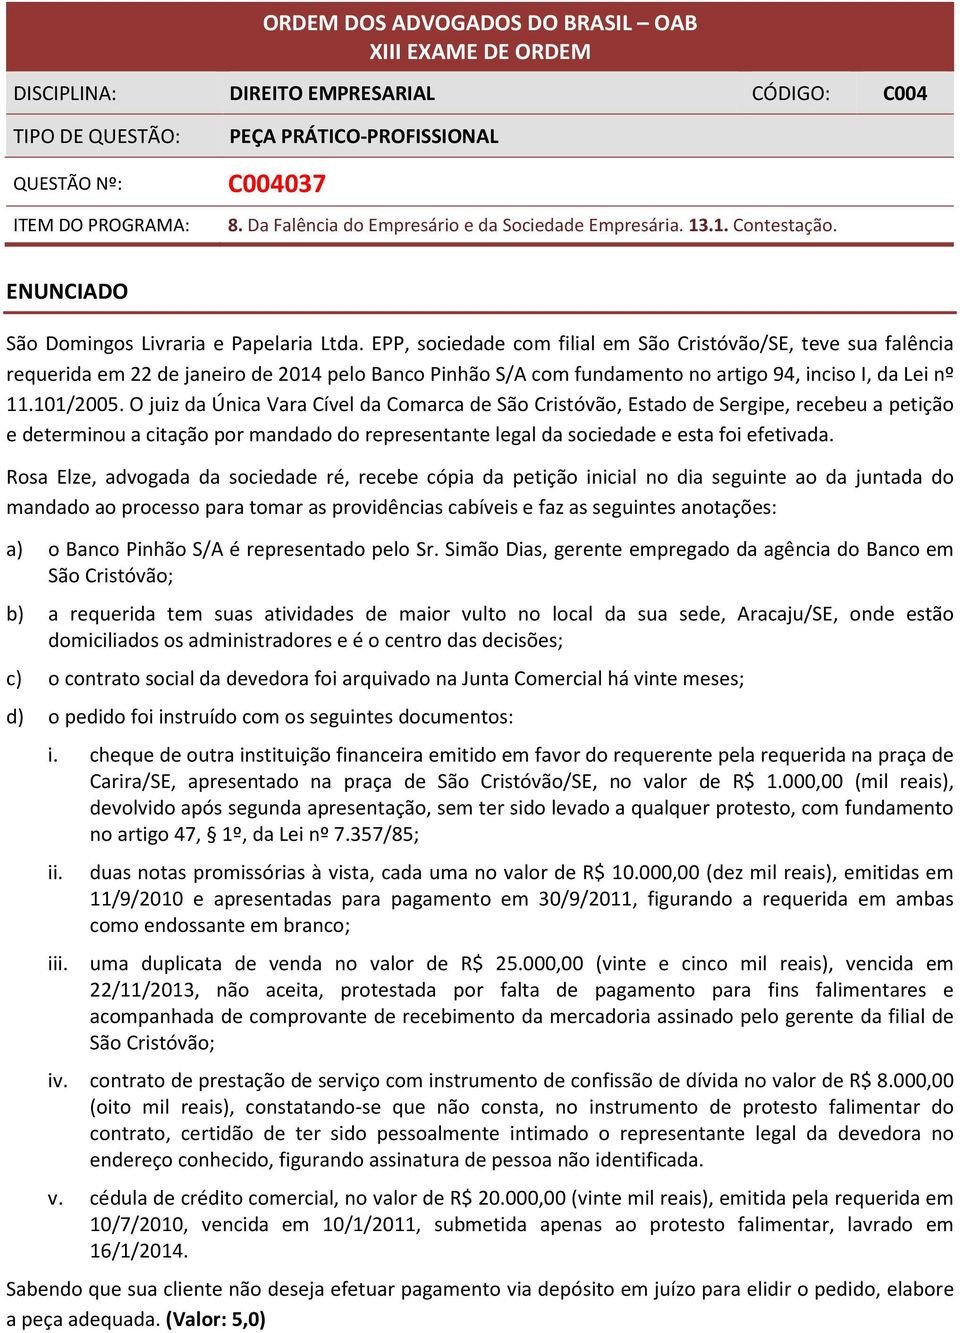 EPP, sociedade com filial em São Cristóvão/SE, teve sua falência requerida em 22 de janeiro de 2014 pelo Banco Pinhão S/A com fundamento no artigo 94, inciso I, da Lei nº 11.101/2005.